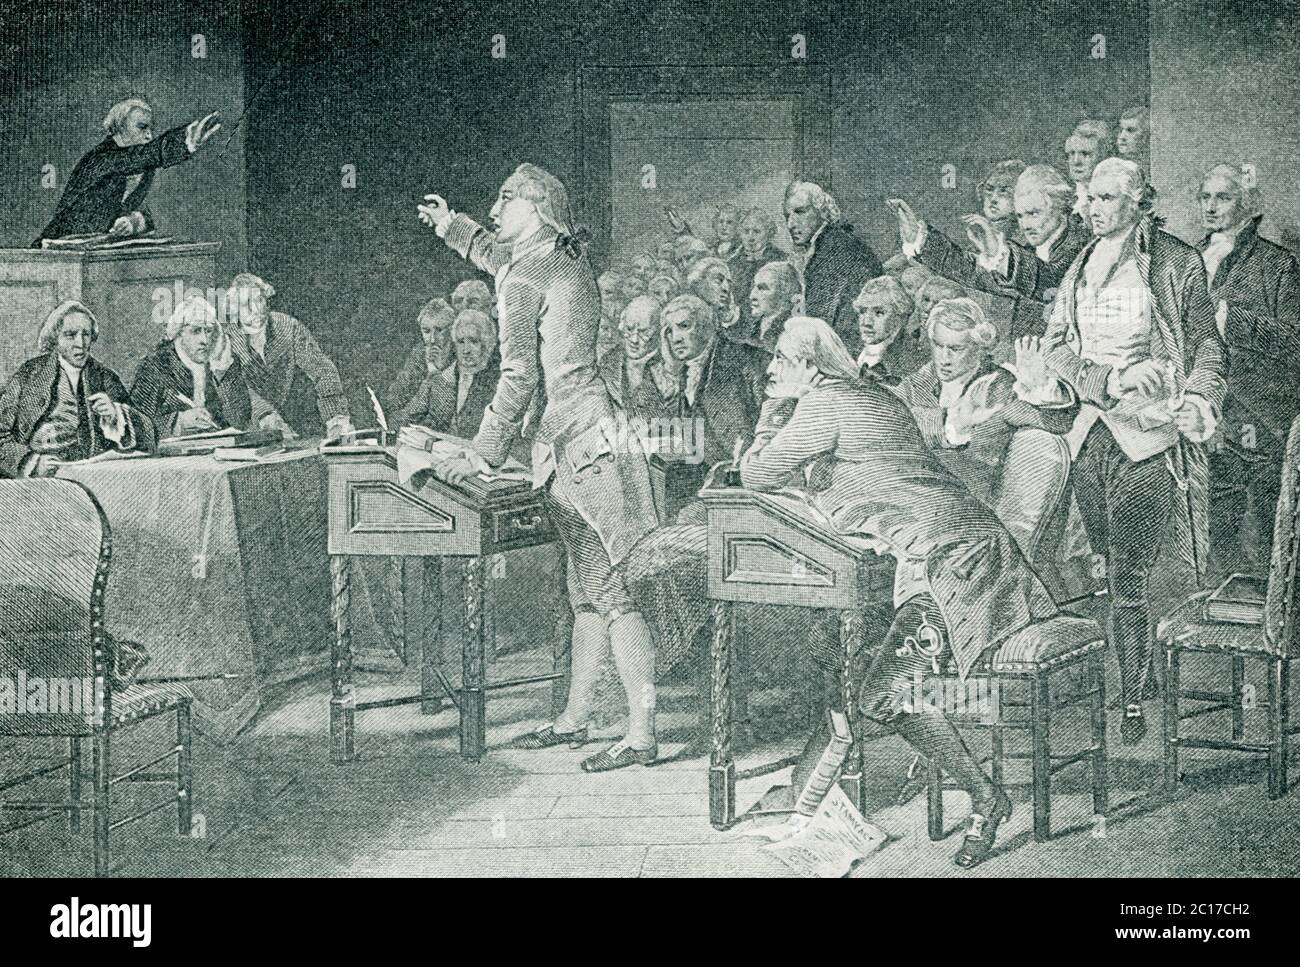 Visto qui in questa illustrazione è Patrick Henry che affronta la Convenzione della Virginia. Patrick Henry (1736–1799) è stato un patriota e un oratore americano. Ha incoraggiato la rivolta coloniale nel sud attraverso i suoi discorsi ed è noto per le sue parole: "Dammi la libertà, o dammi la morte!" Foto Stock